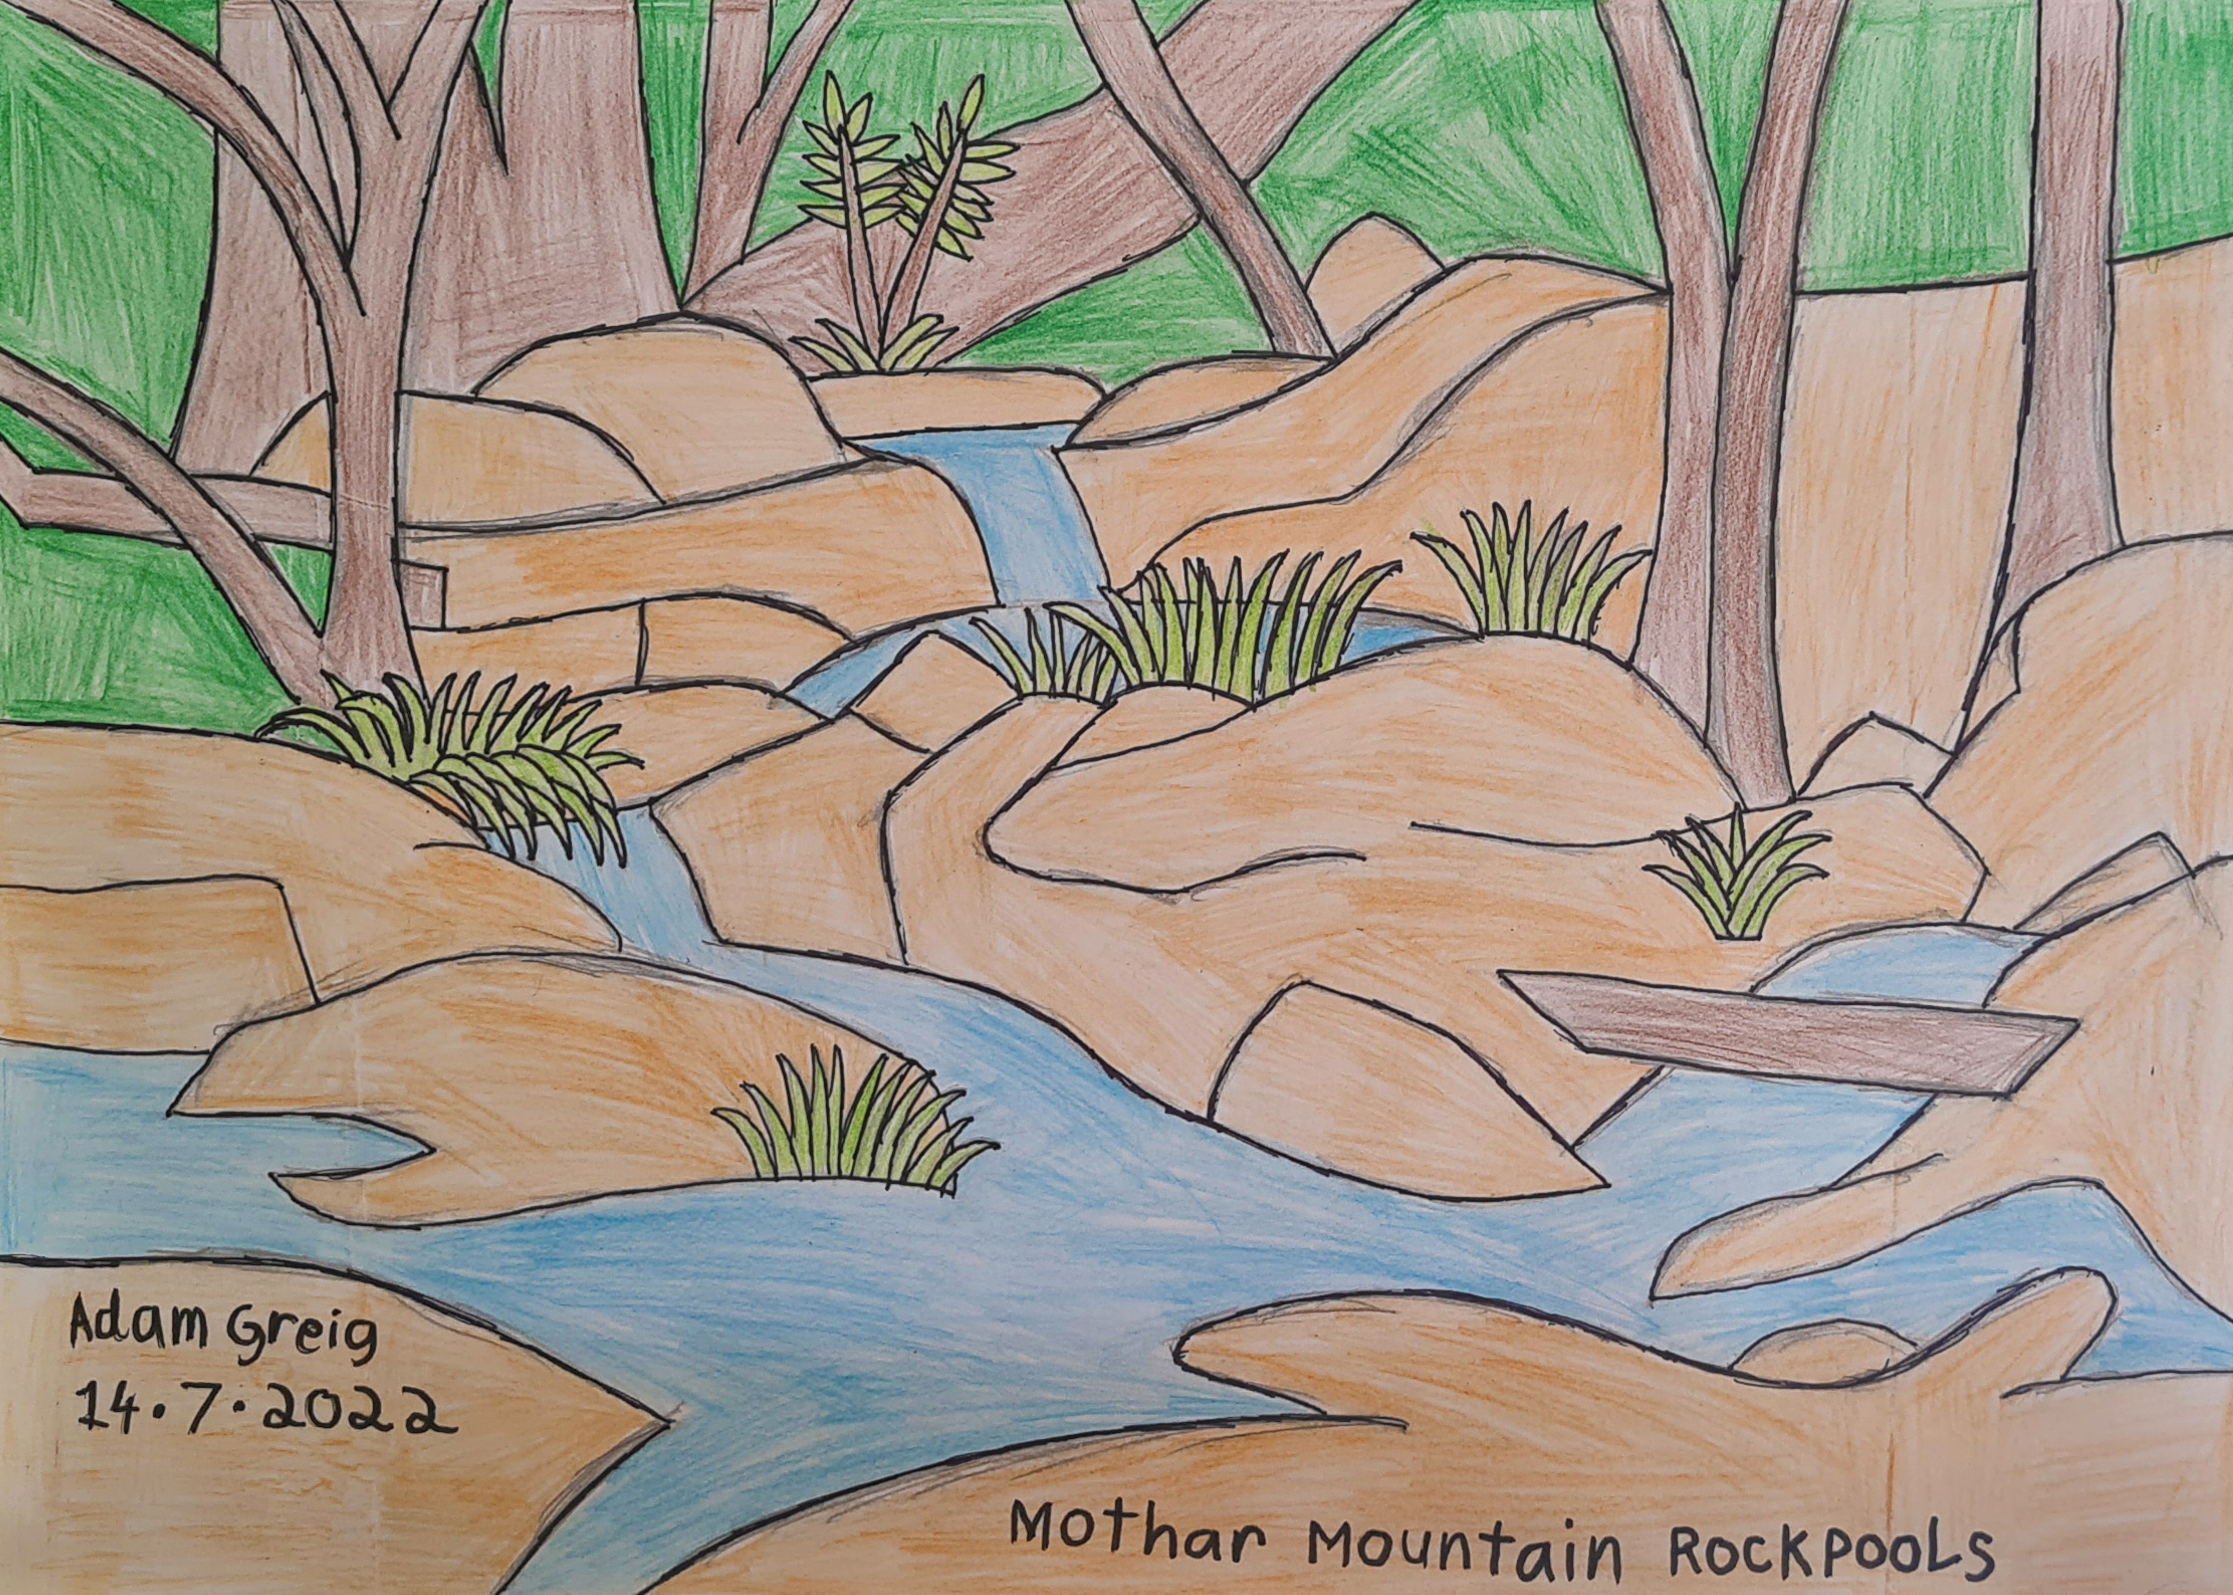 “Mothar Mountain Rockpools”  by Adam Greig : 14/07/22